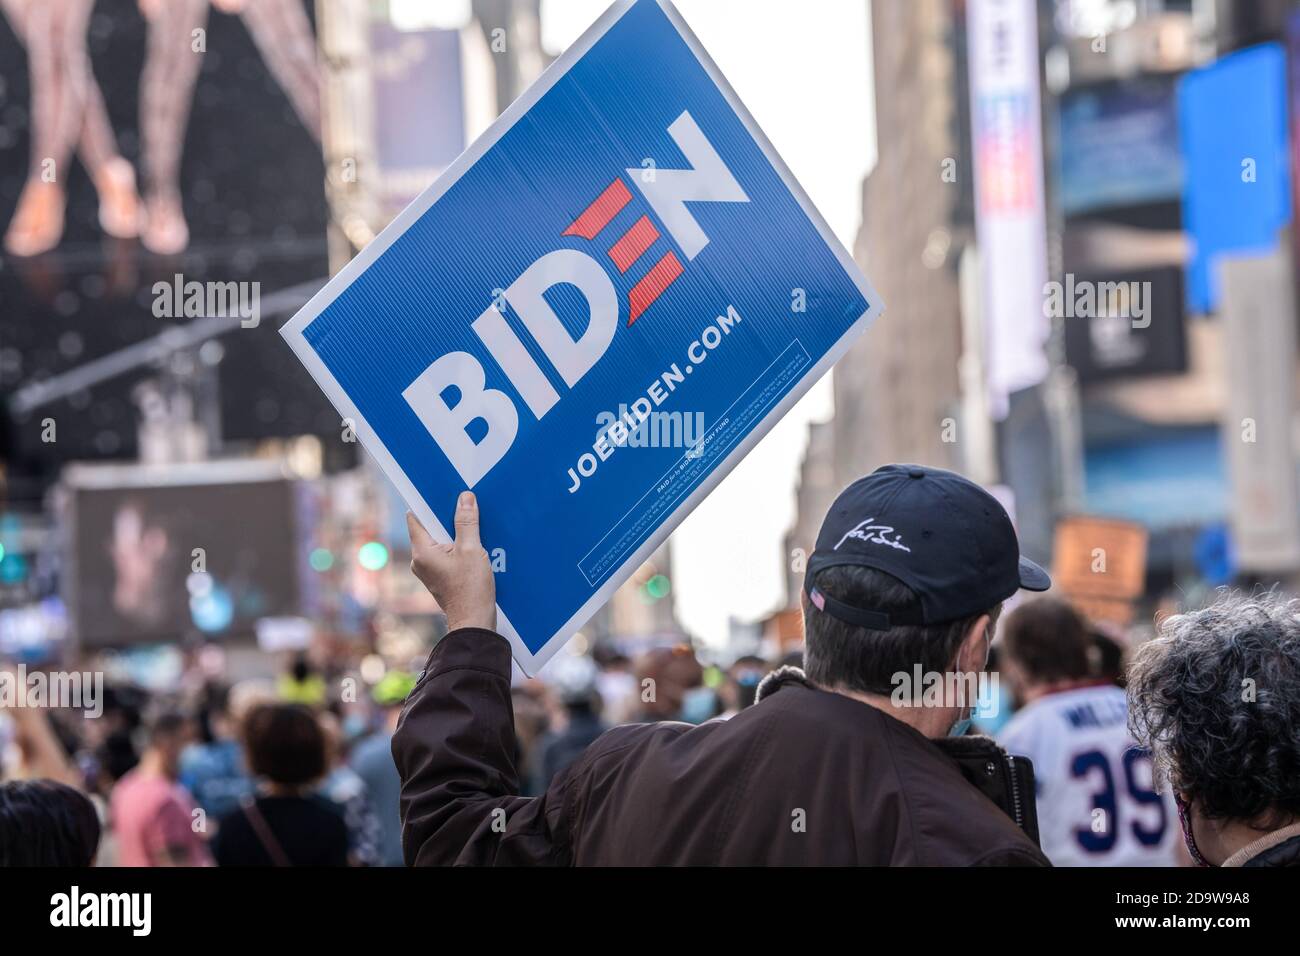 New York, Stati Uniti. 07 novembre 2020. Un tifoso con un cartello celebra la vittoria di Biden/Harris all'elezione del biglietto a Times Square. La gente è scese in strada in massa dopo che molti dei principali media hanno chiamato l'elezione per l'ex vice presidente Joe Biden. Rapporto NYPD ci è una gamma di 500 - 900 persone radunate in Times Square. Gruppi simili si sono riuniti nelle strade della città e in tutto il paese. Credit: SOPA Images Limited/Alamy Live News Foto Stock